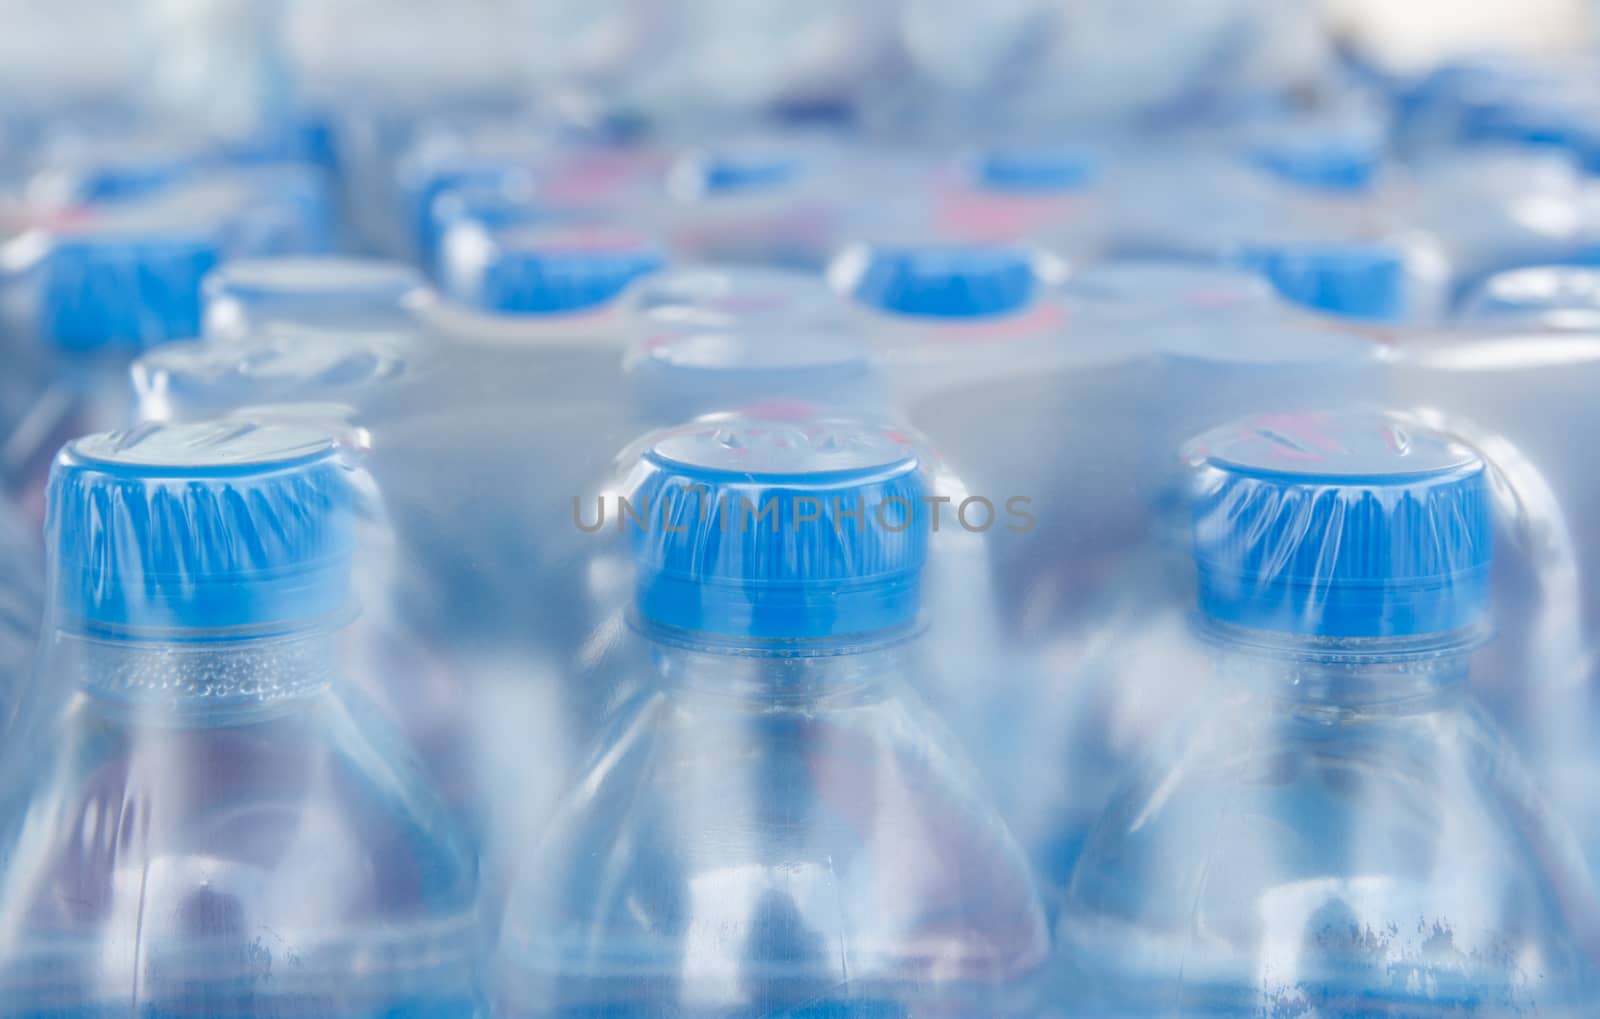 Water bottles in plastic wrap by vitawin